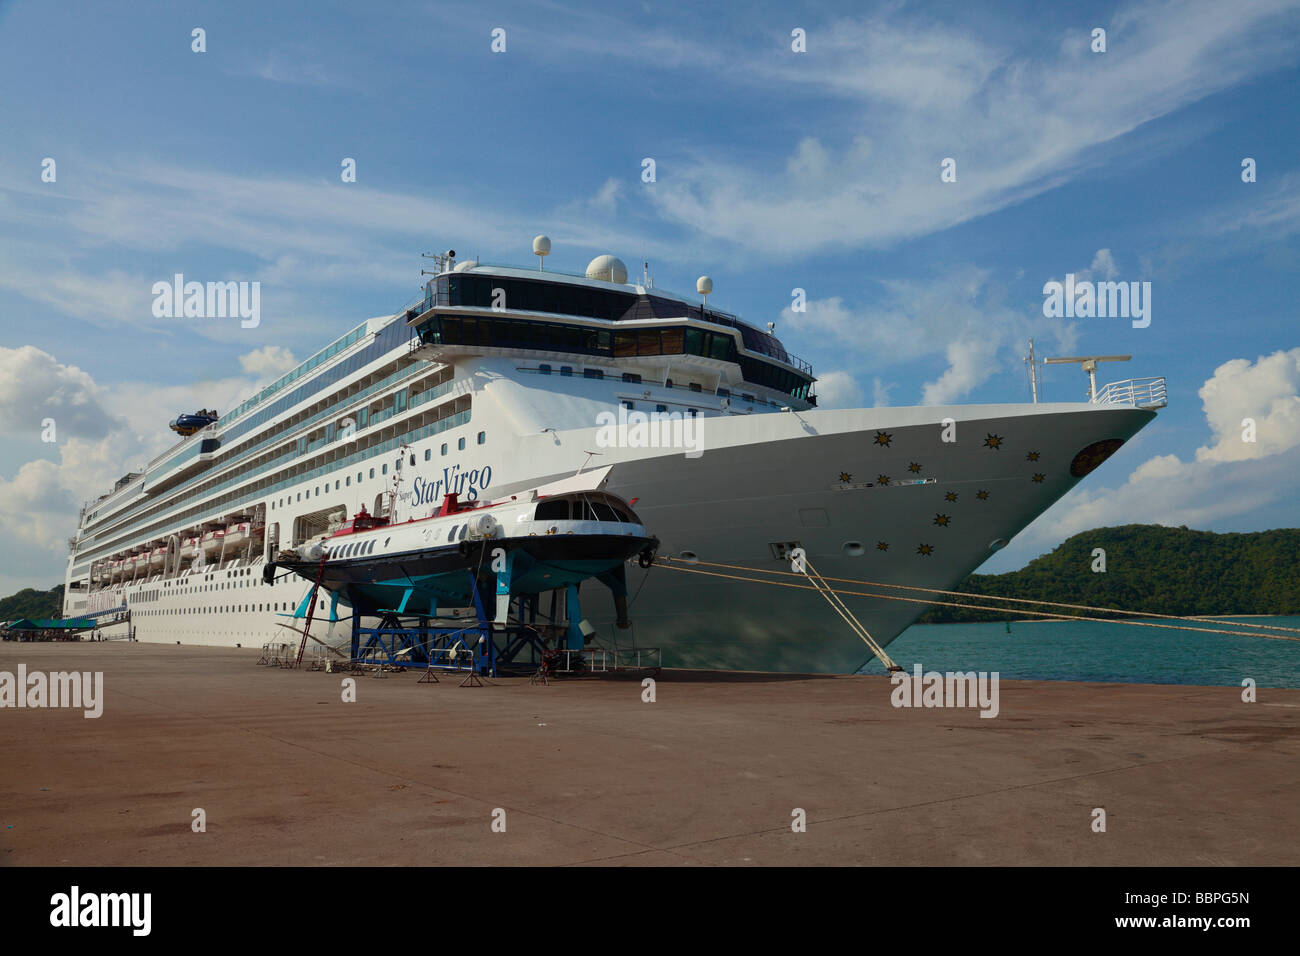 The Star Virgo cruise ship Stock Photo